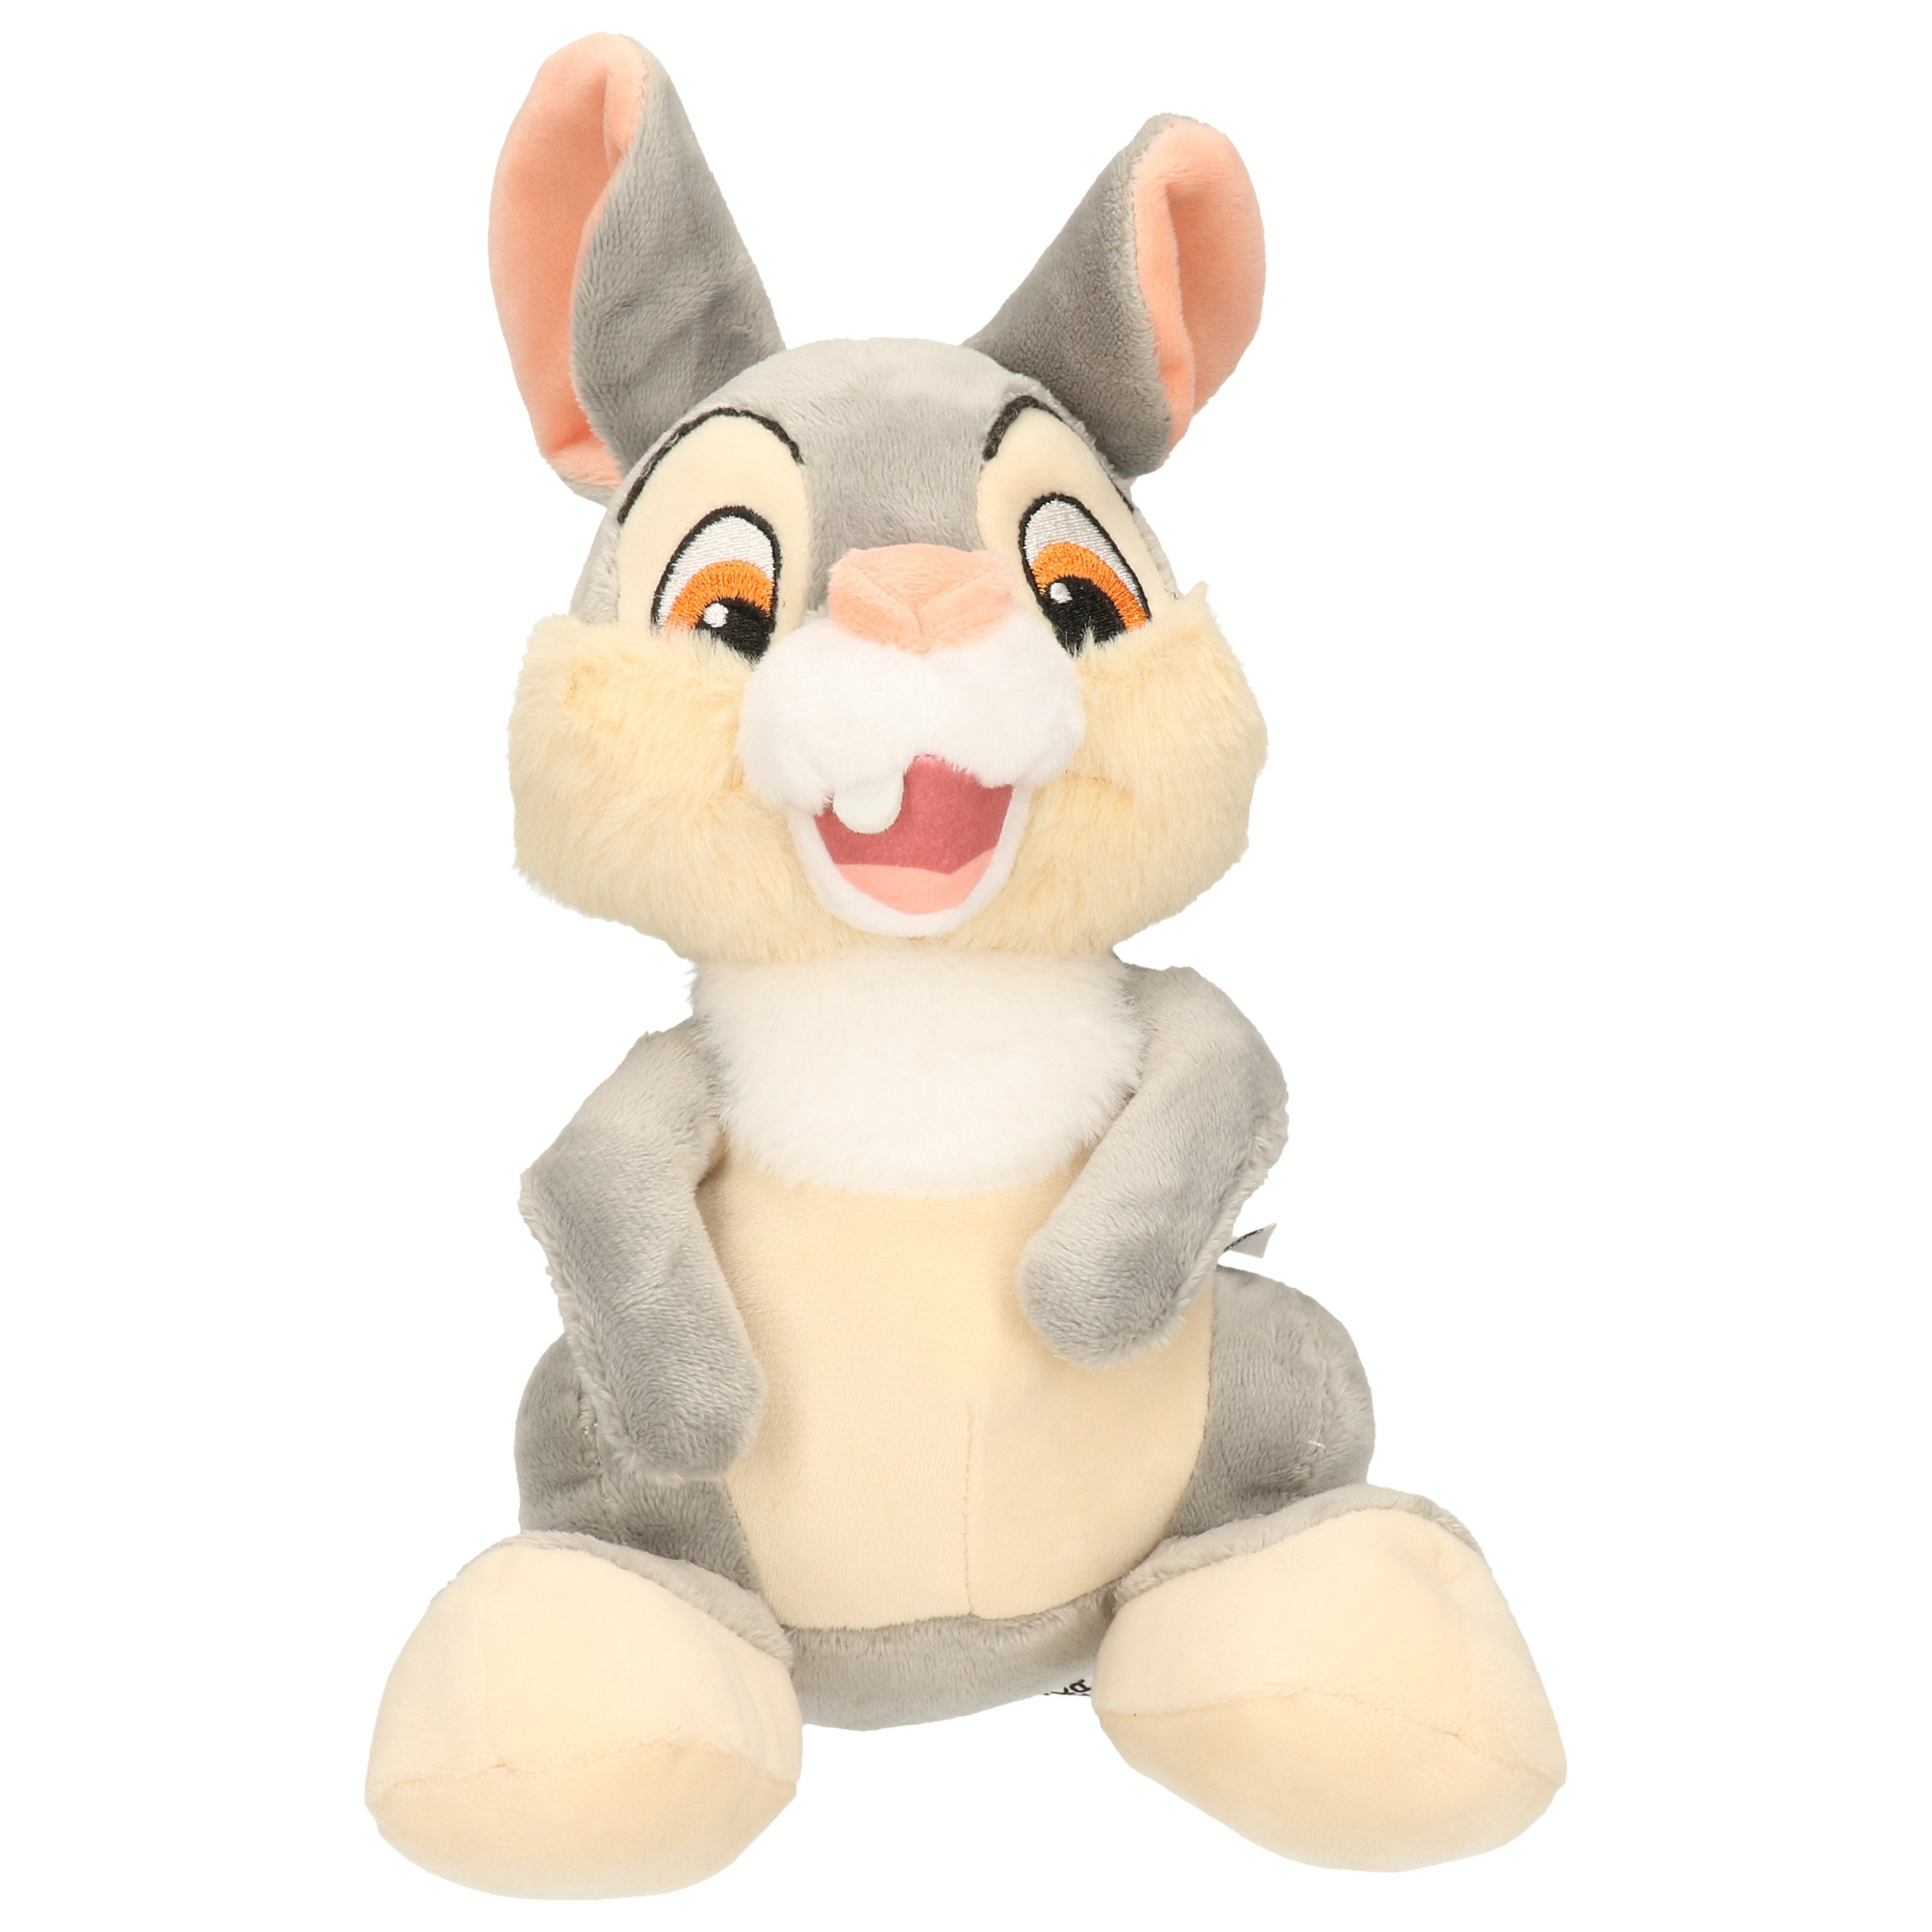 Konijnen speelgoed artikelen DisneyStampertje konijn knuffelbeest grijs 20 cm